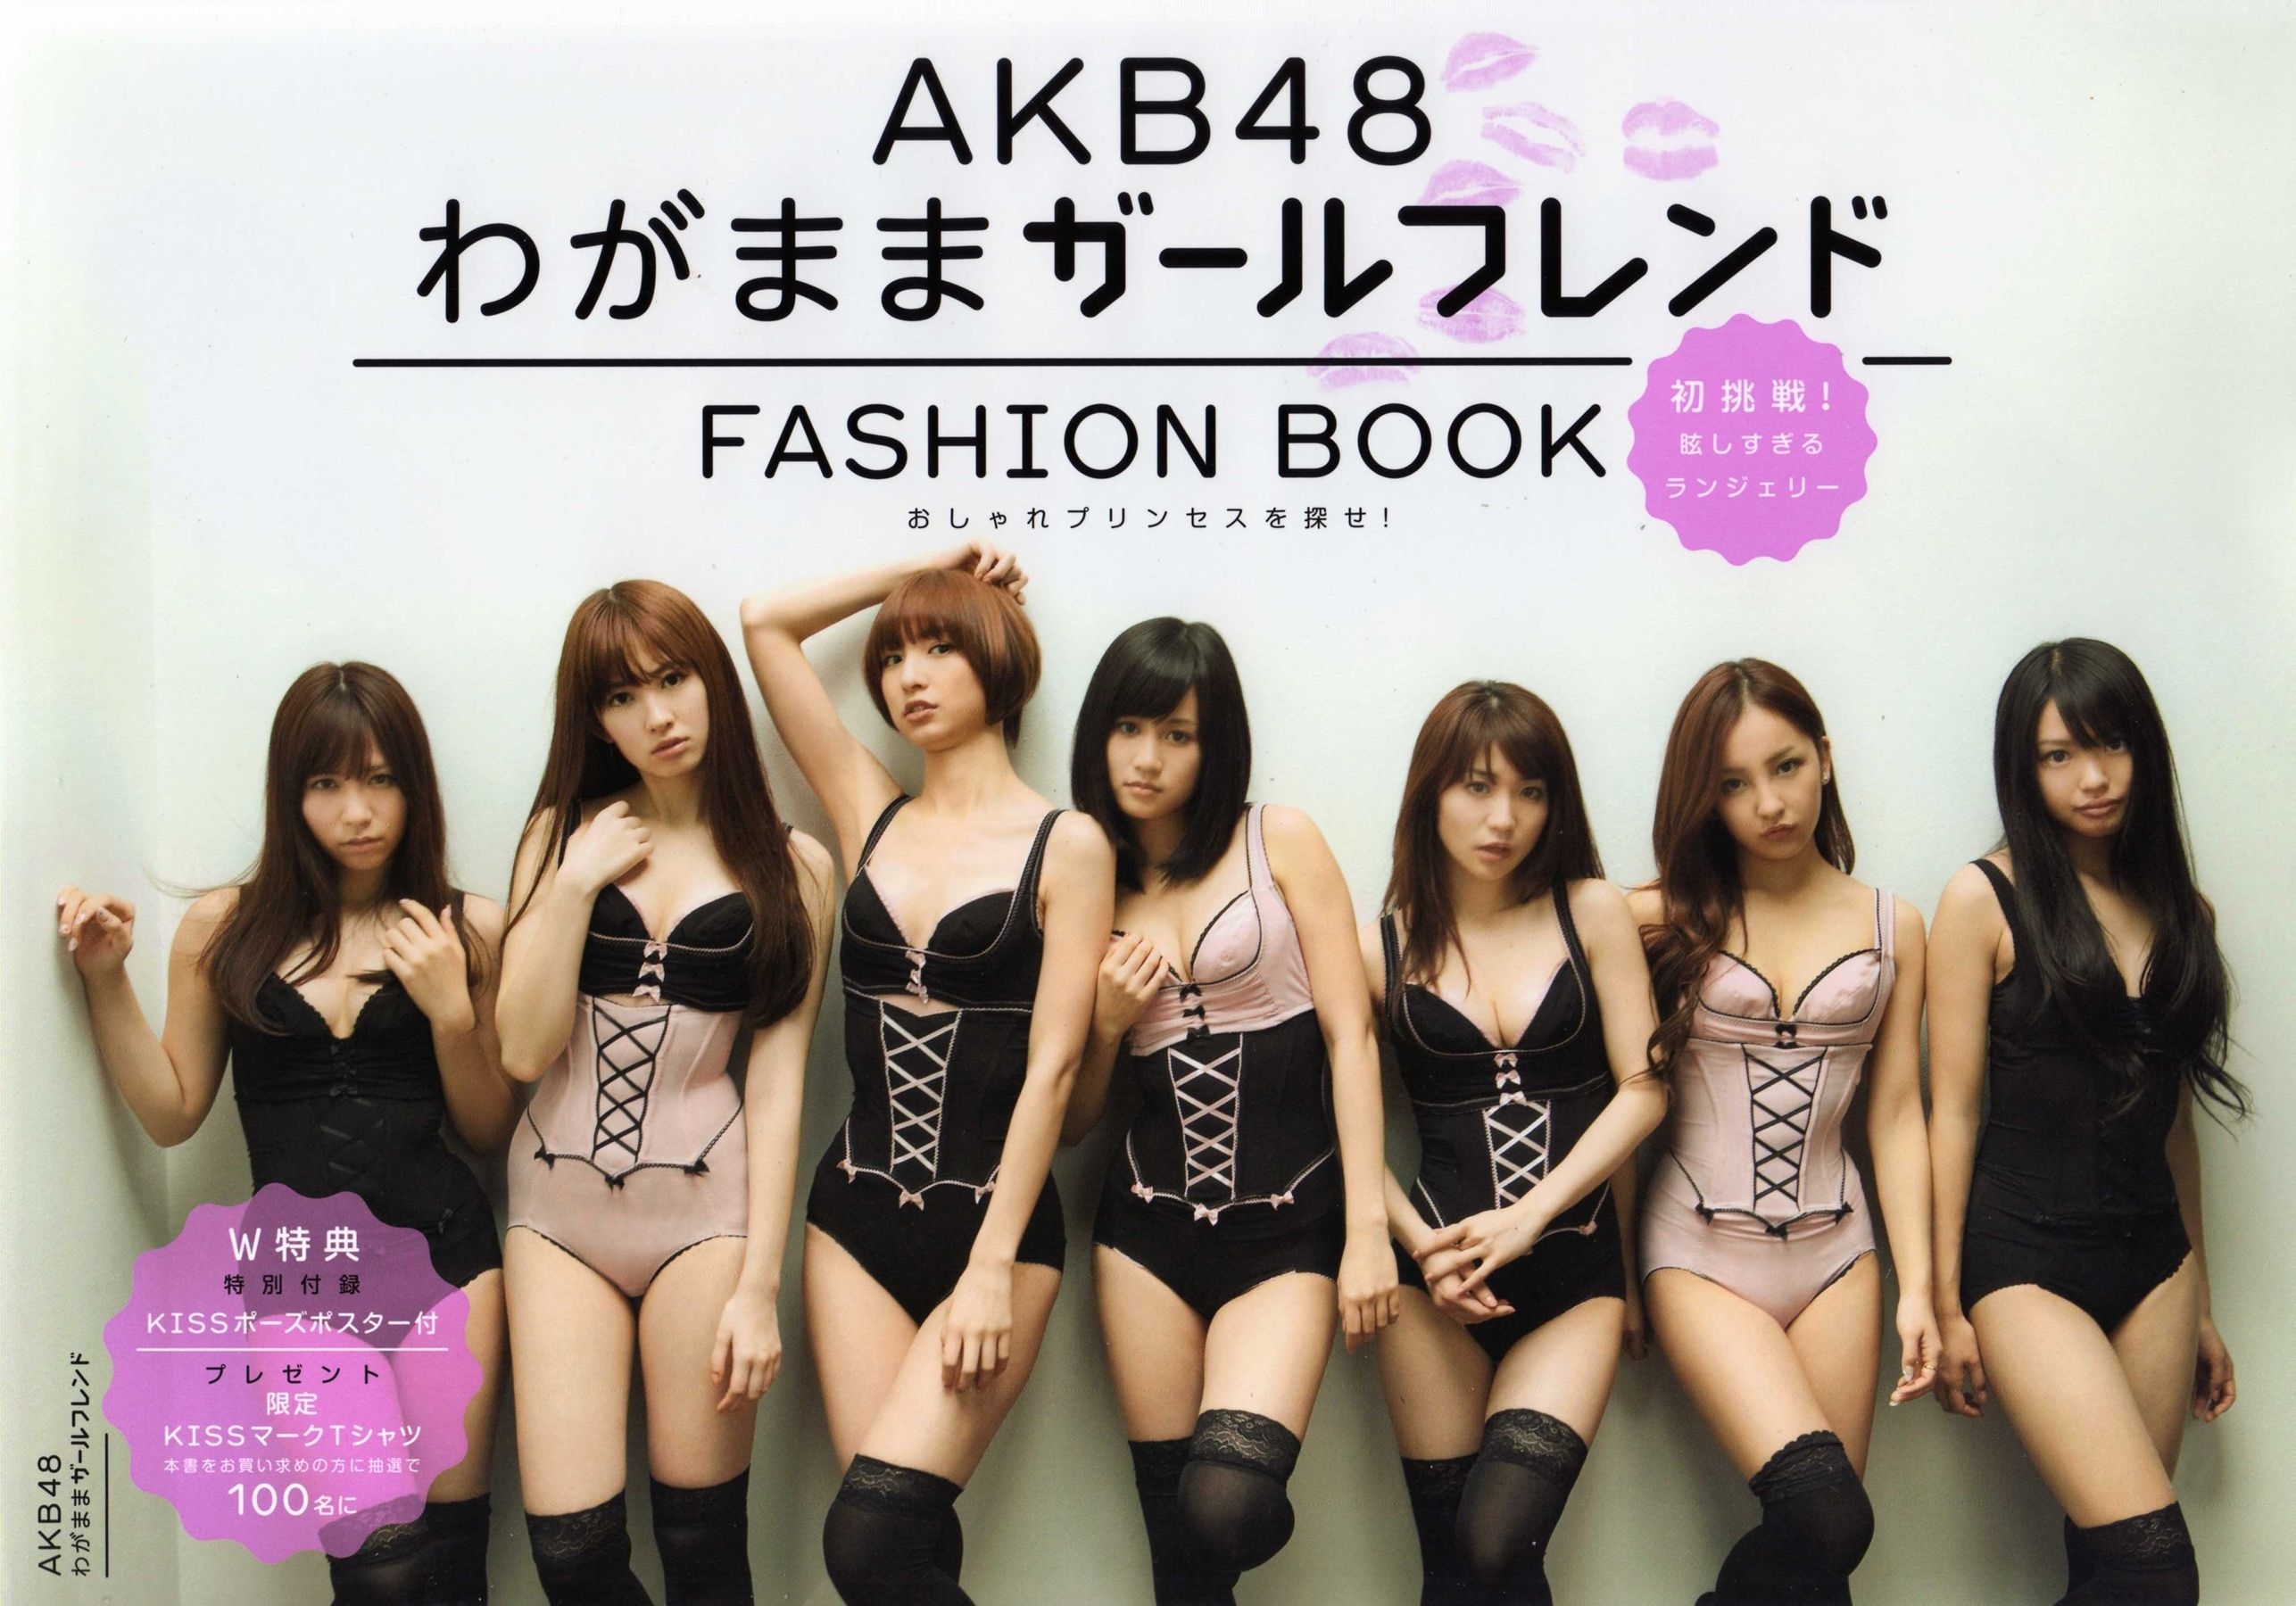 日本AKB48女子组合《2013 Fashion Book内衣秀》  第-1张